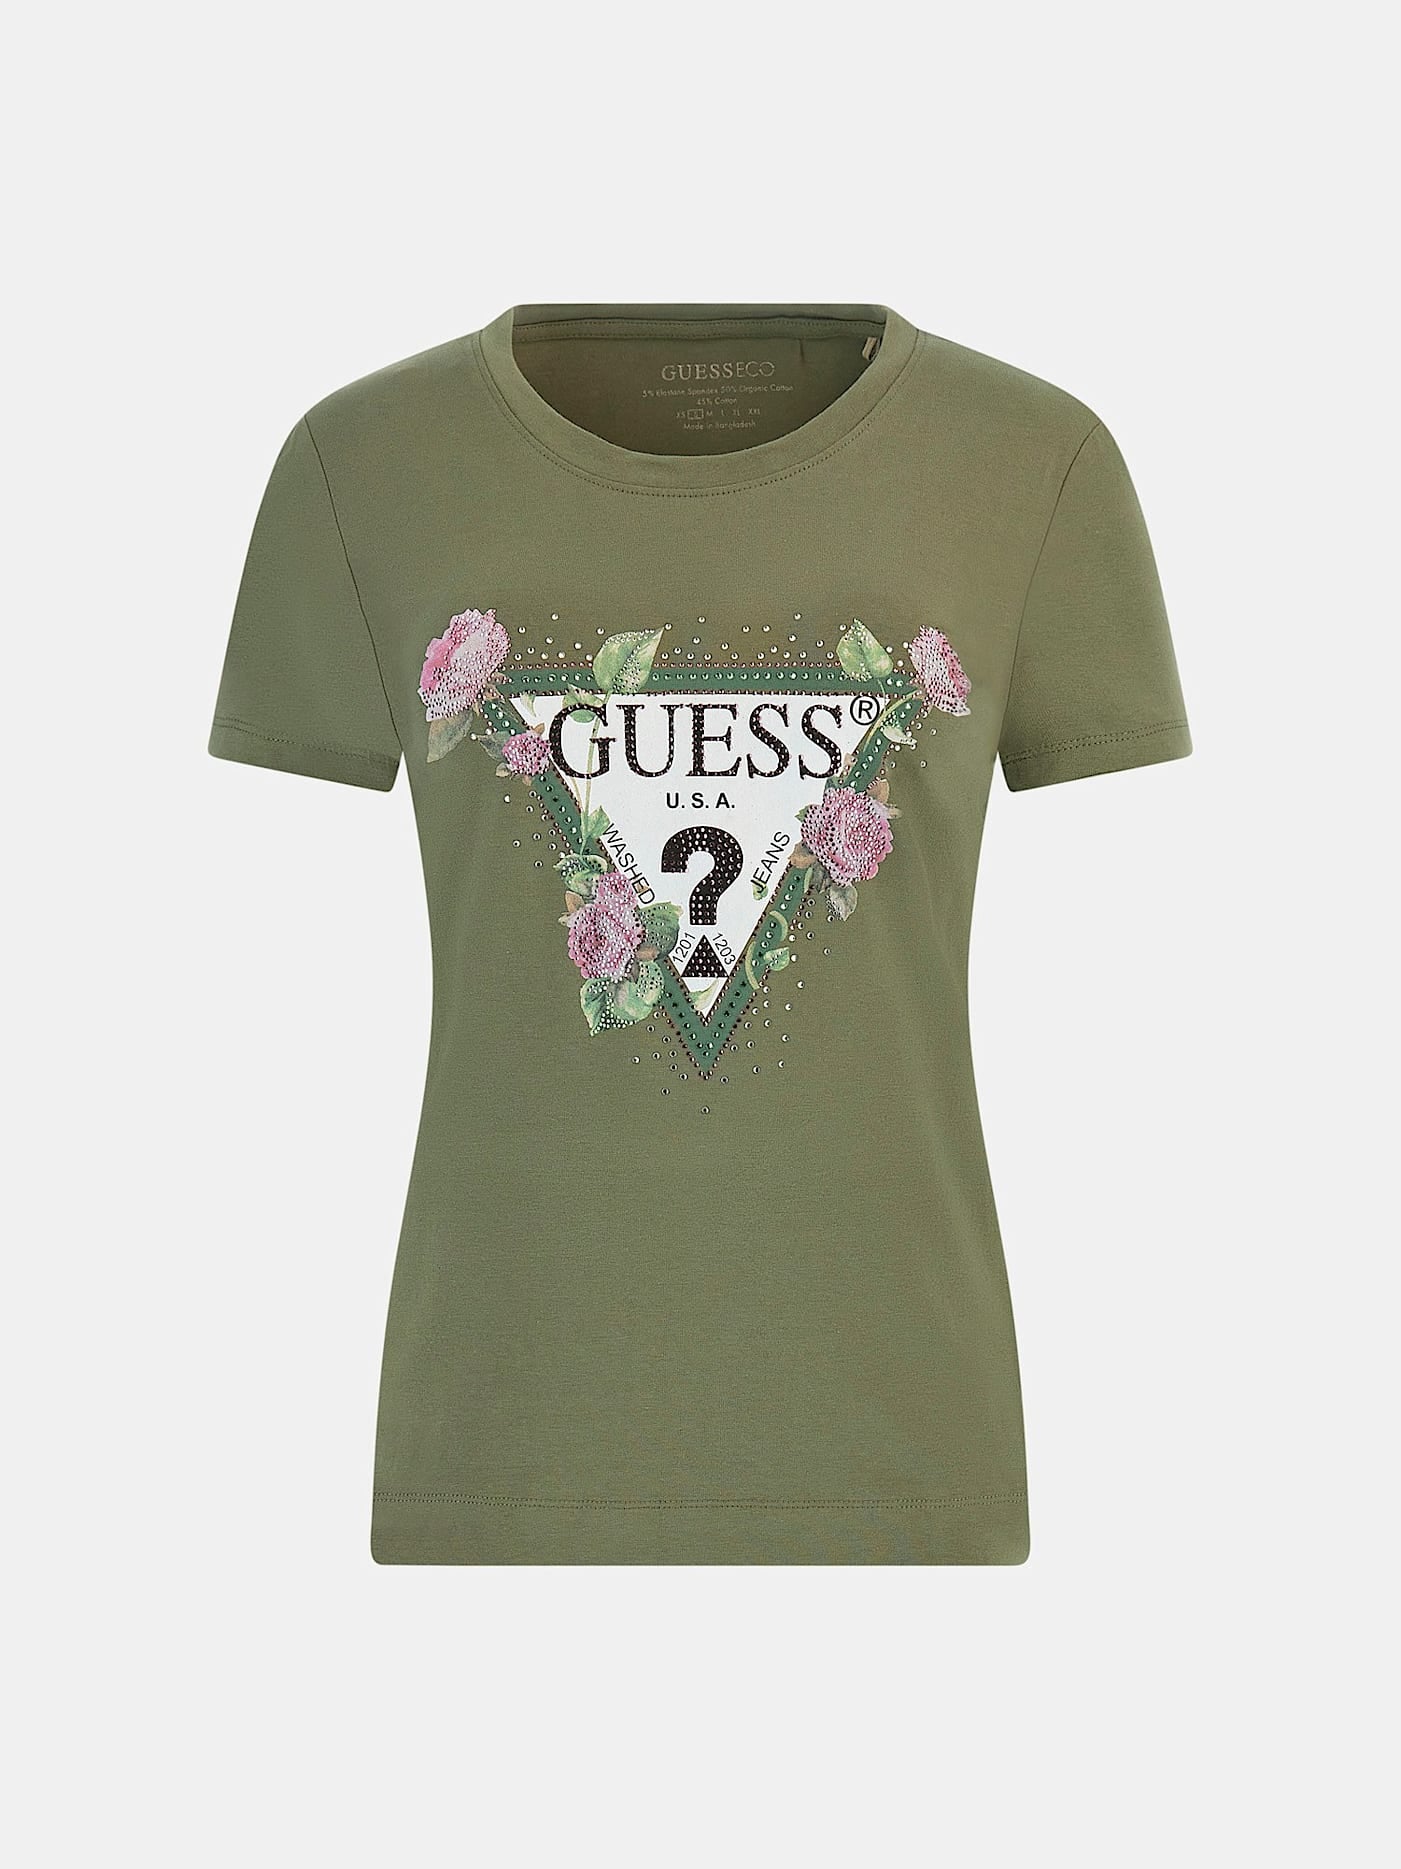 Guess Damen T-Shirt Stretch Logo Blumen